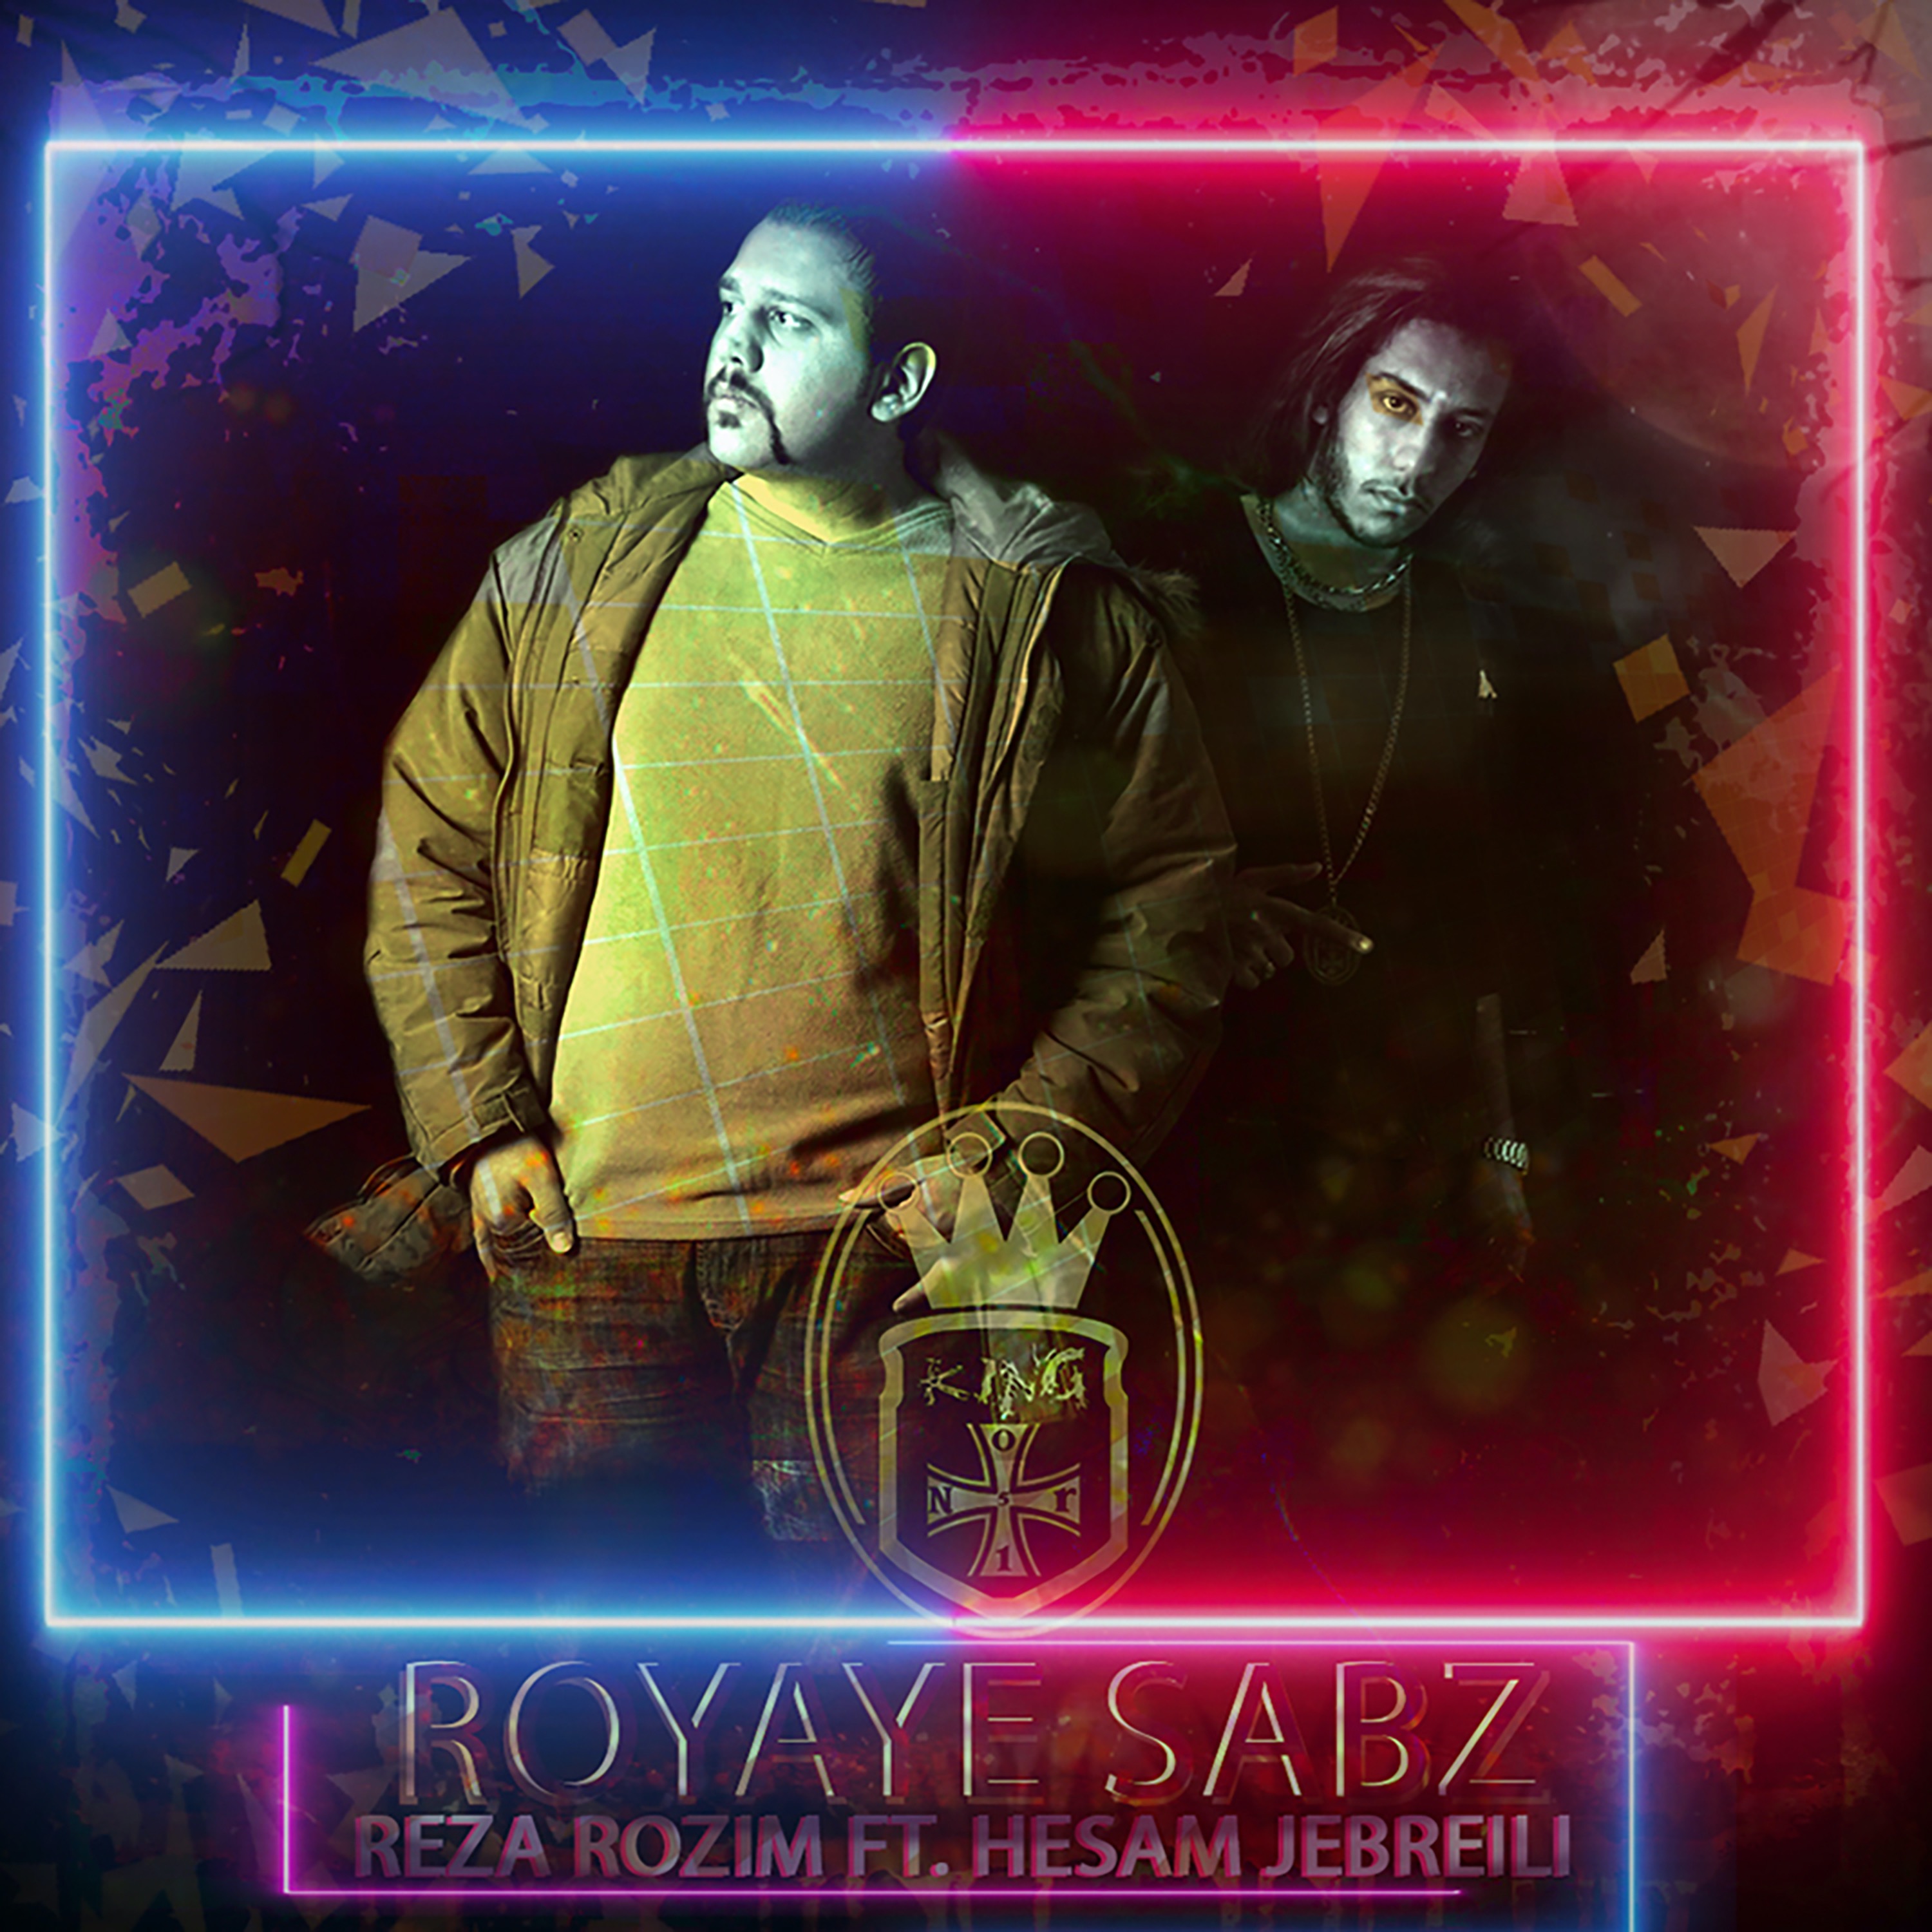  دانلود آهنگ جدید رُظیم - رویای سبز | Download New Music By Reza Rozim - Royaye Sabz (feat. Hesam Jebreili)